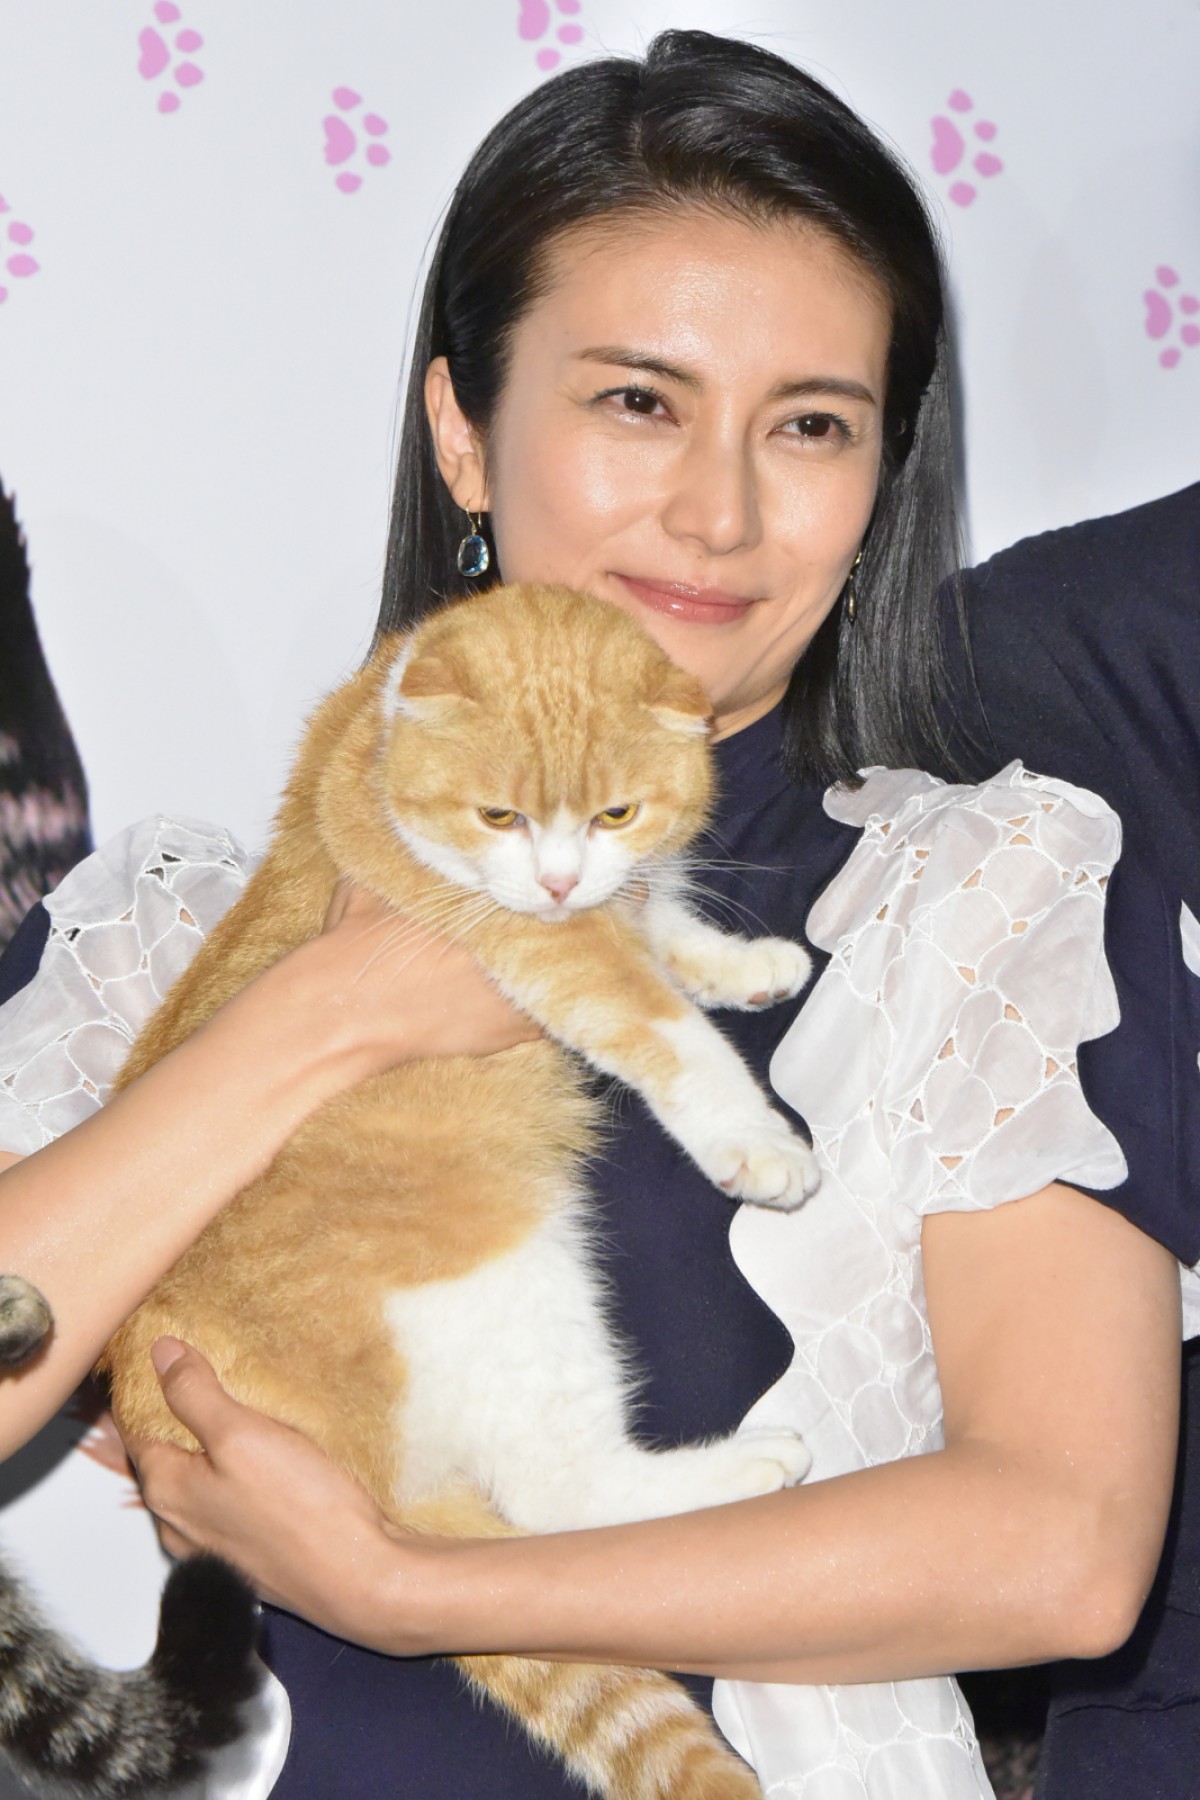 柴咲コウ、猫との生活は「苦労でもあり幸せ」 あふれる猫愛を明かす